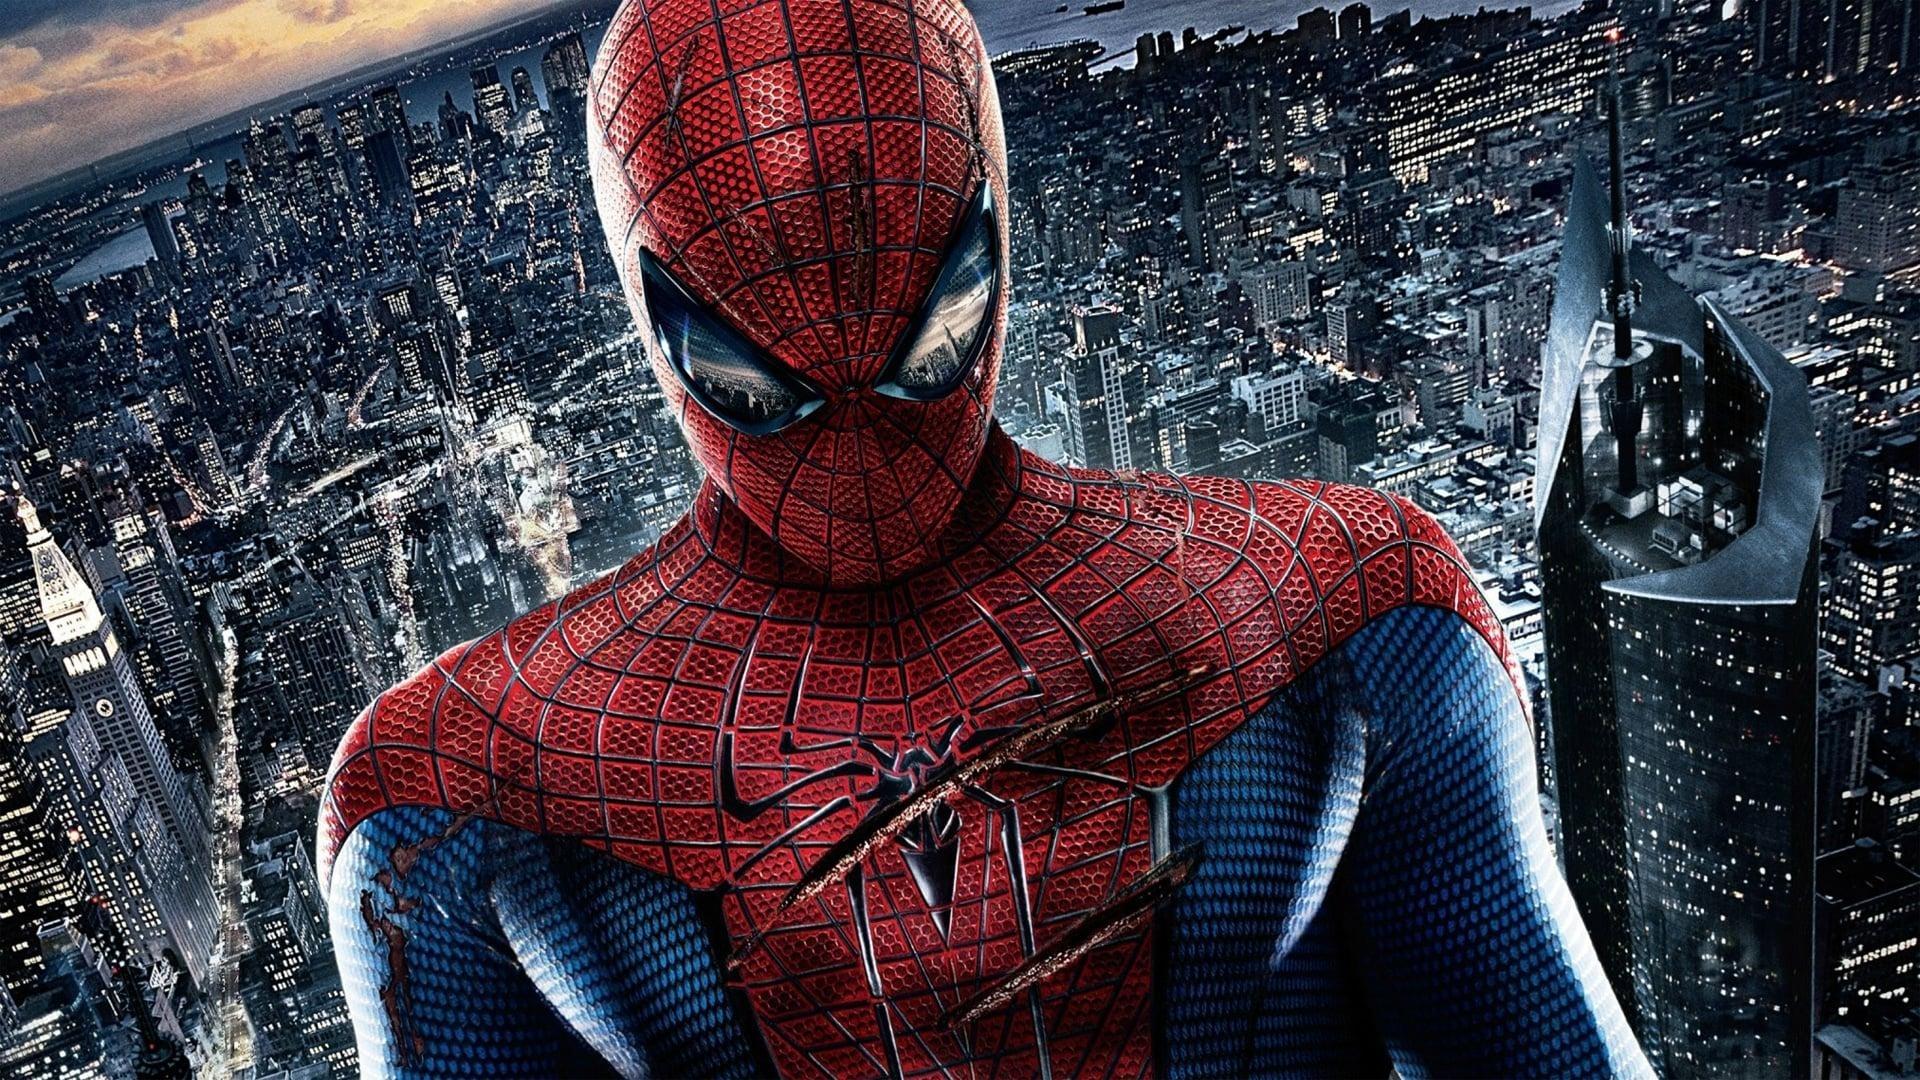 دانلود فیلم The Amazing Spider-Man 2012